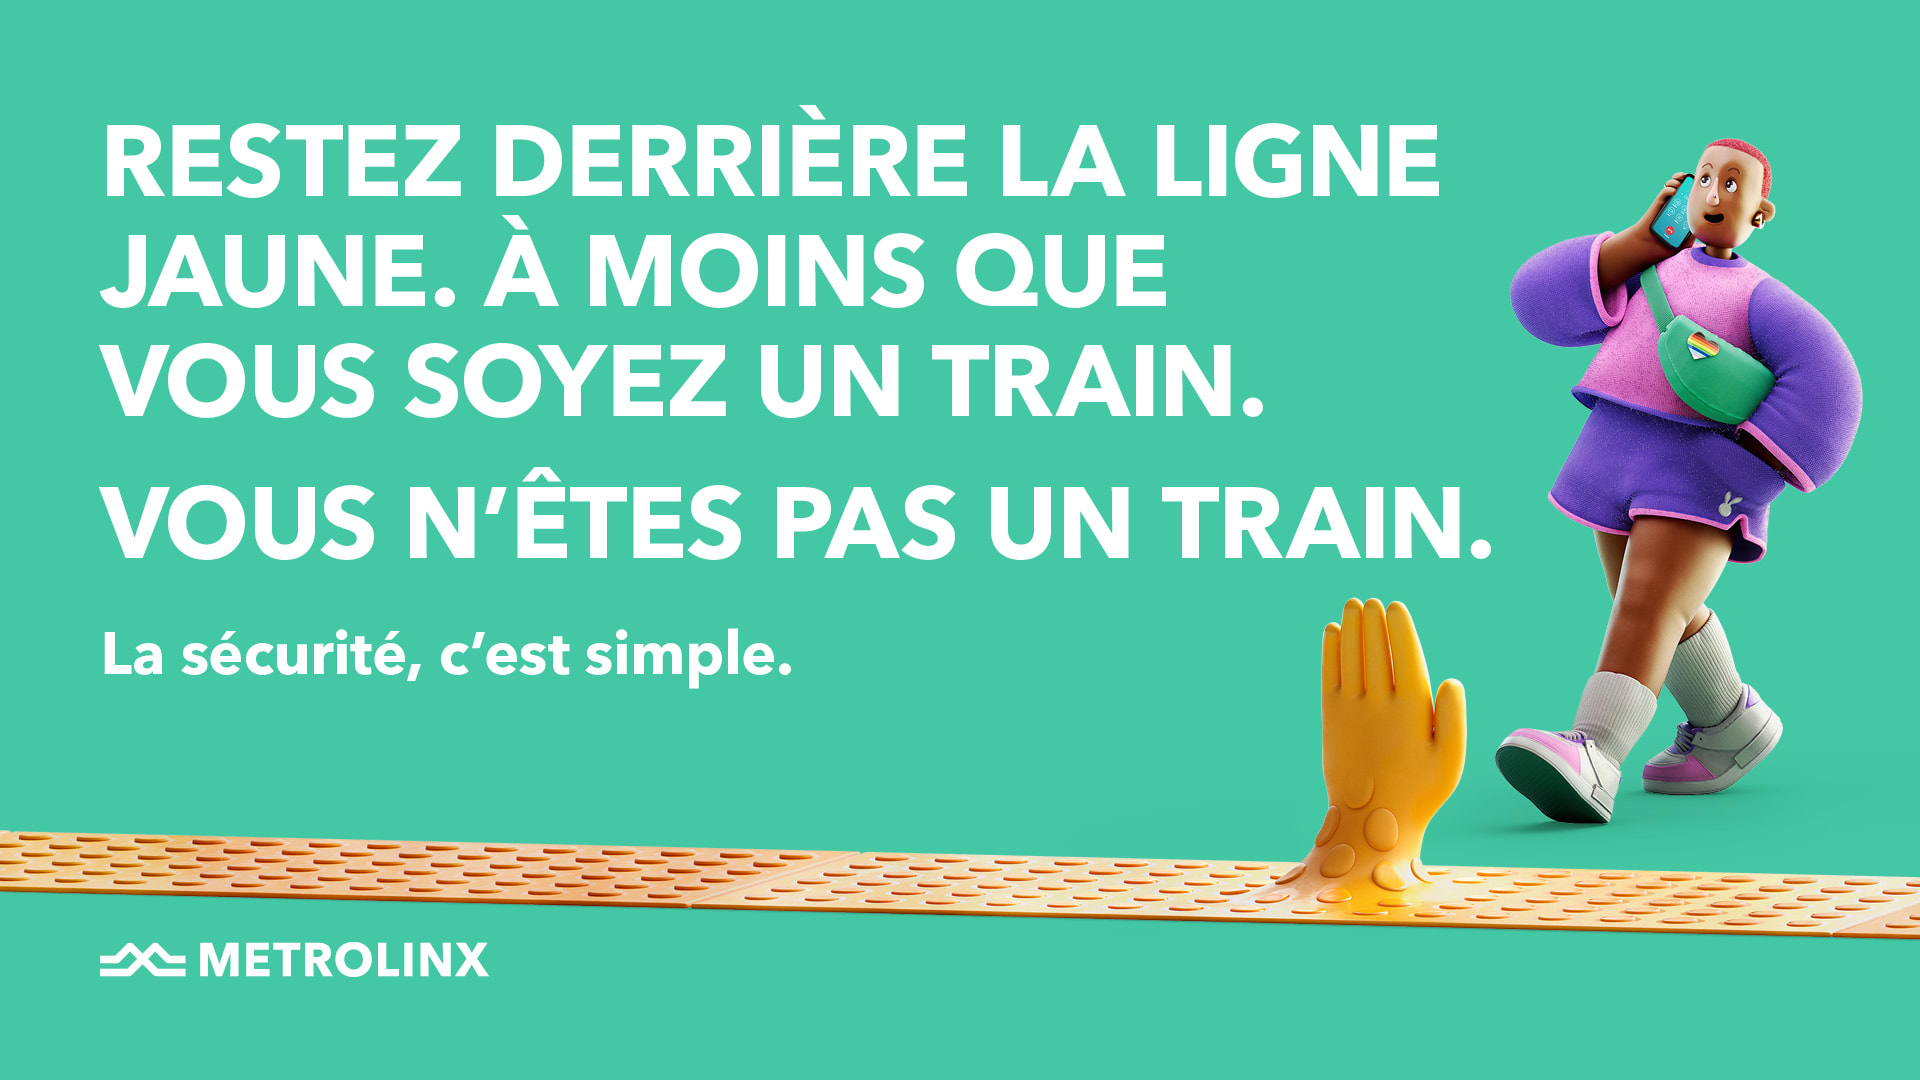 Restez derriere la ligne jaune.  A moins que vous soyez un train.  Vous n'etes pas un train.